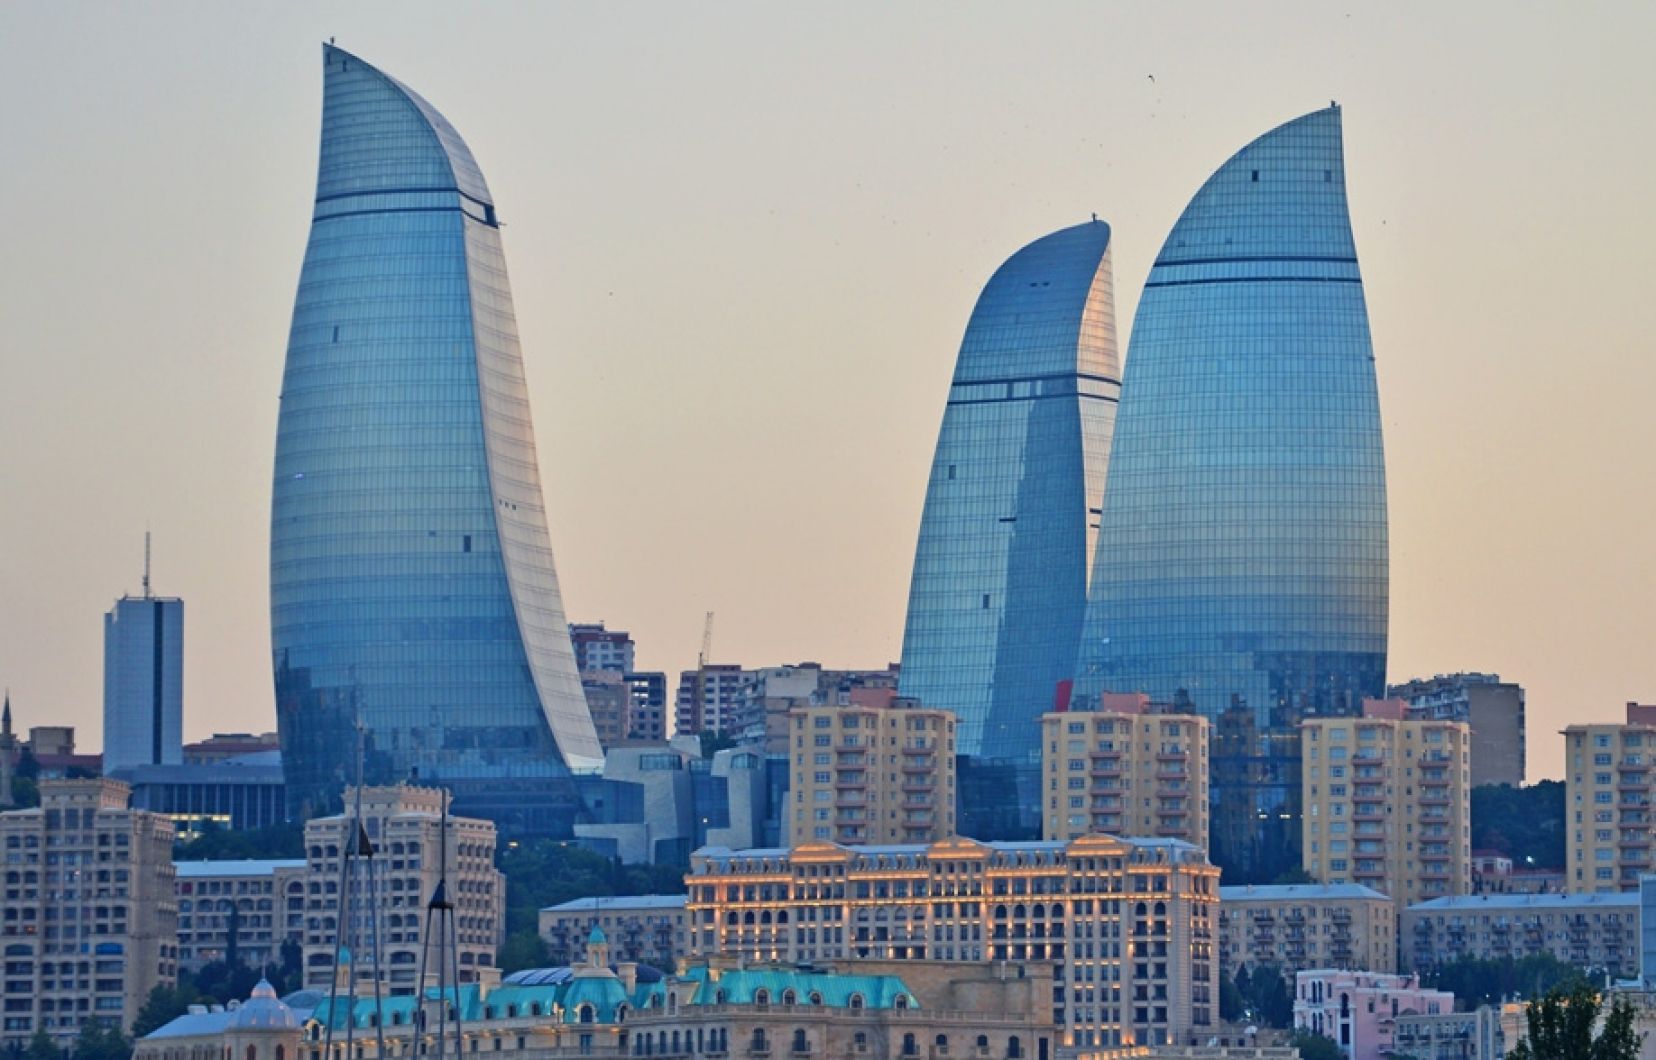 Անձնագրում հայկական կնիքի պատճառով ռուս լրագրողը «արգելափակվել» է ադրբեջանական անցակետում